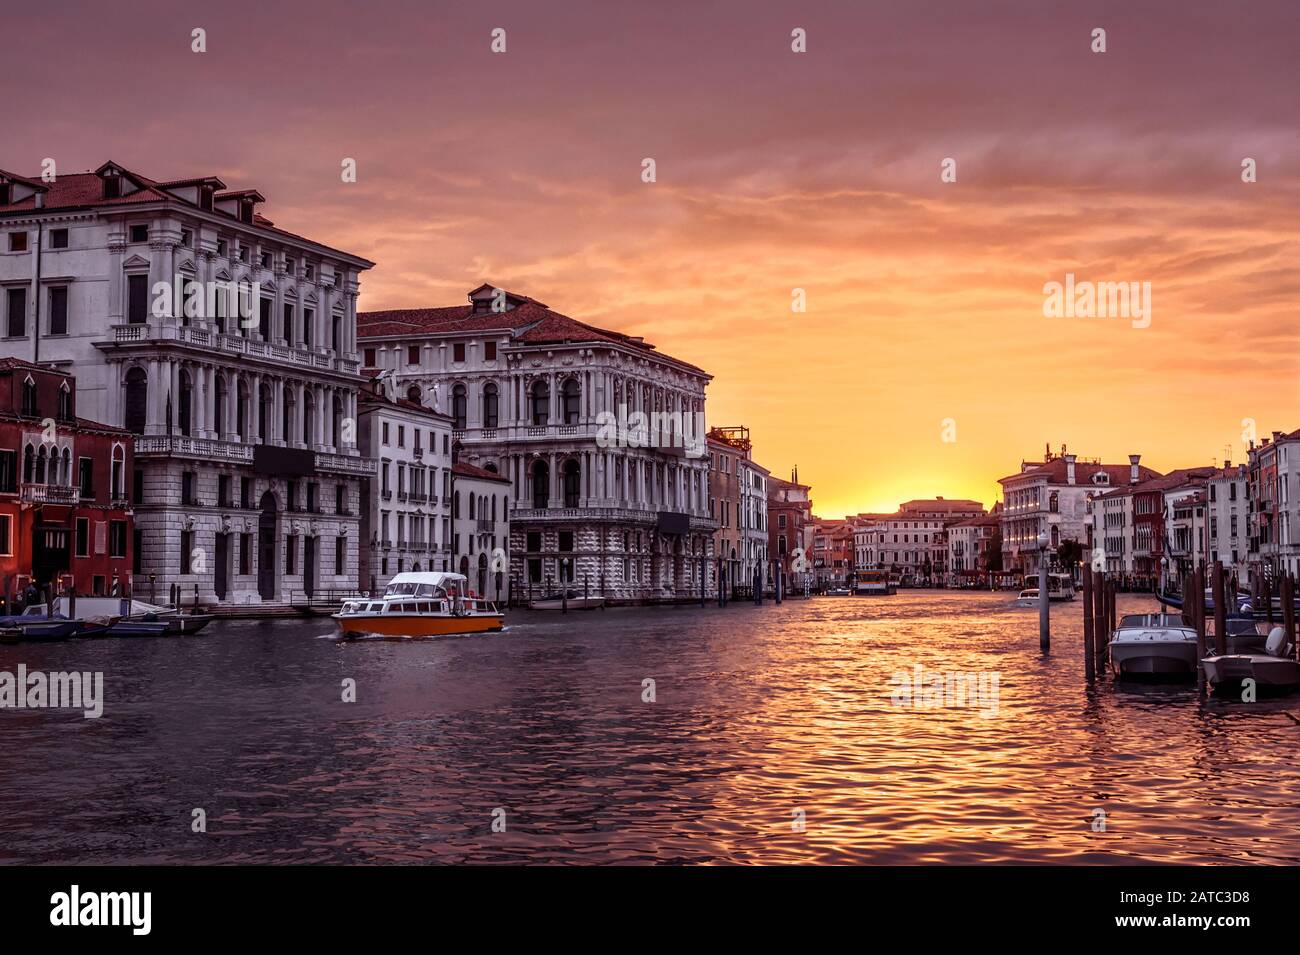 Venedig bei Sonnenuntergang, Italien. Panorama auf den Canal Grande am Abend. Urbane Landschaft Venedigs in Sonnenschein. Schöner sonniger Blick auf die Stadt Venedig in der Abenddämmerung. Stockfoto